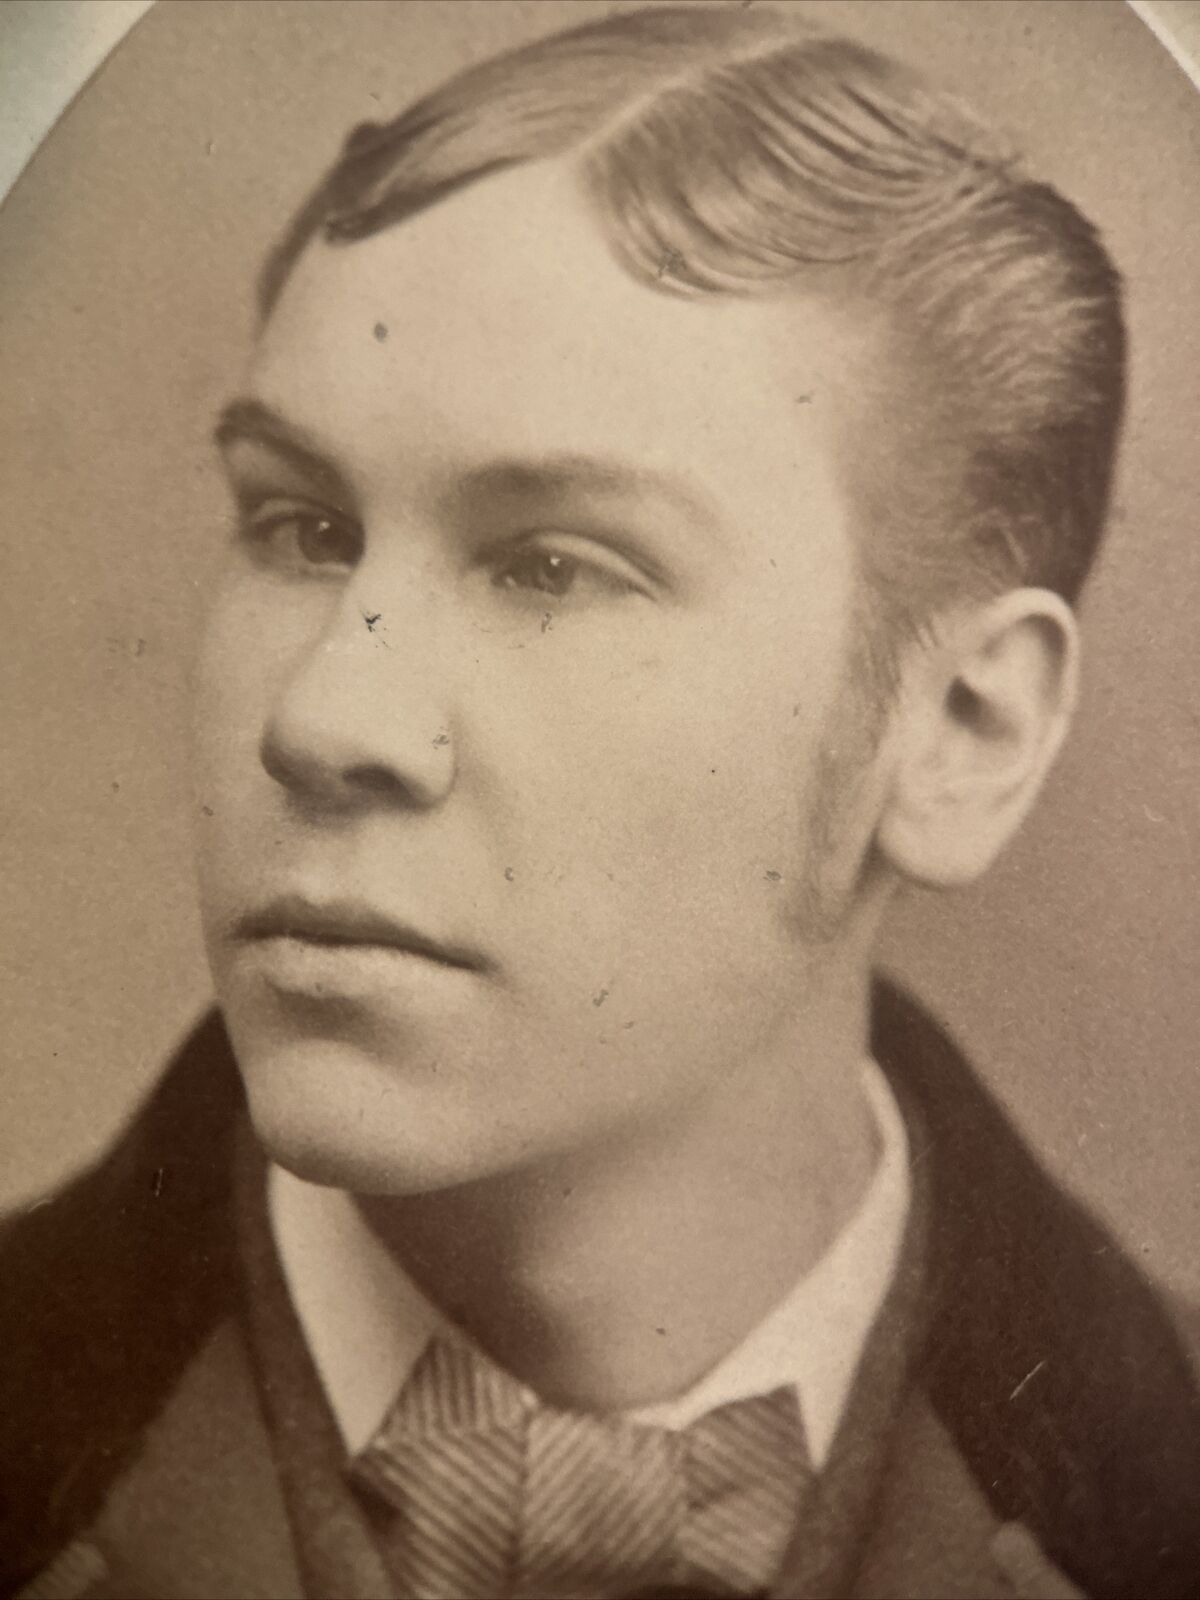 CDV Photograph Victorian Era Man